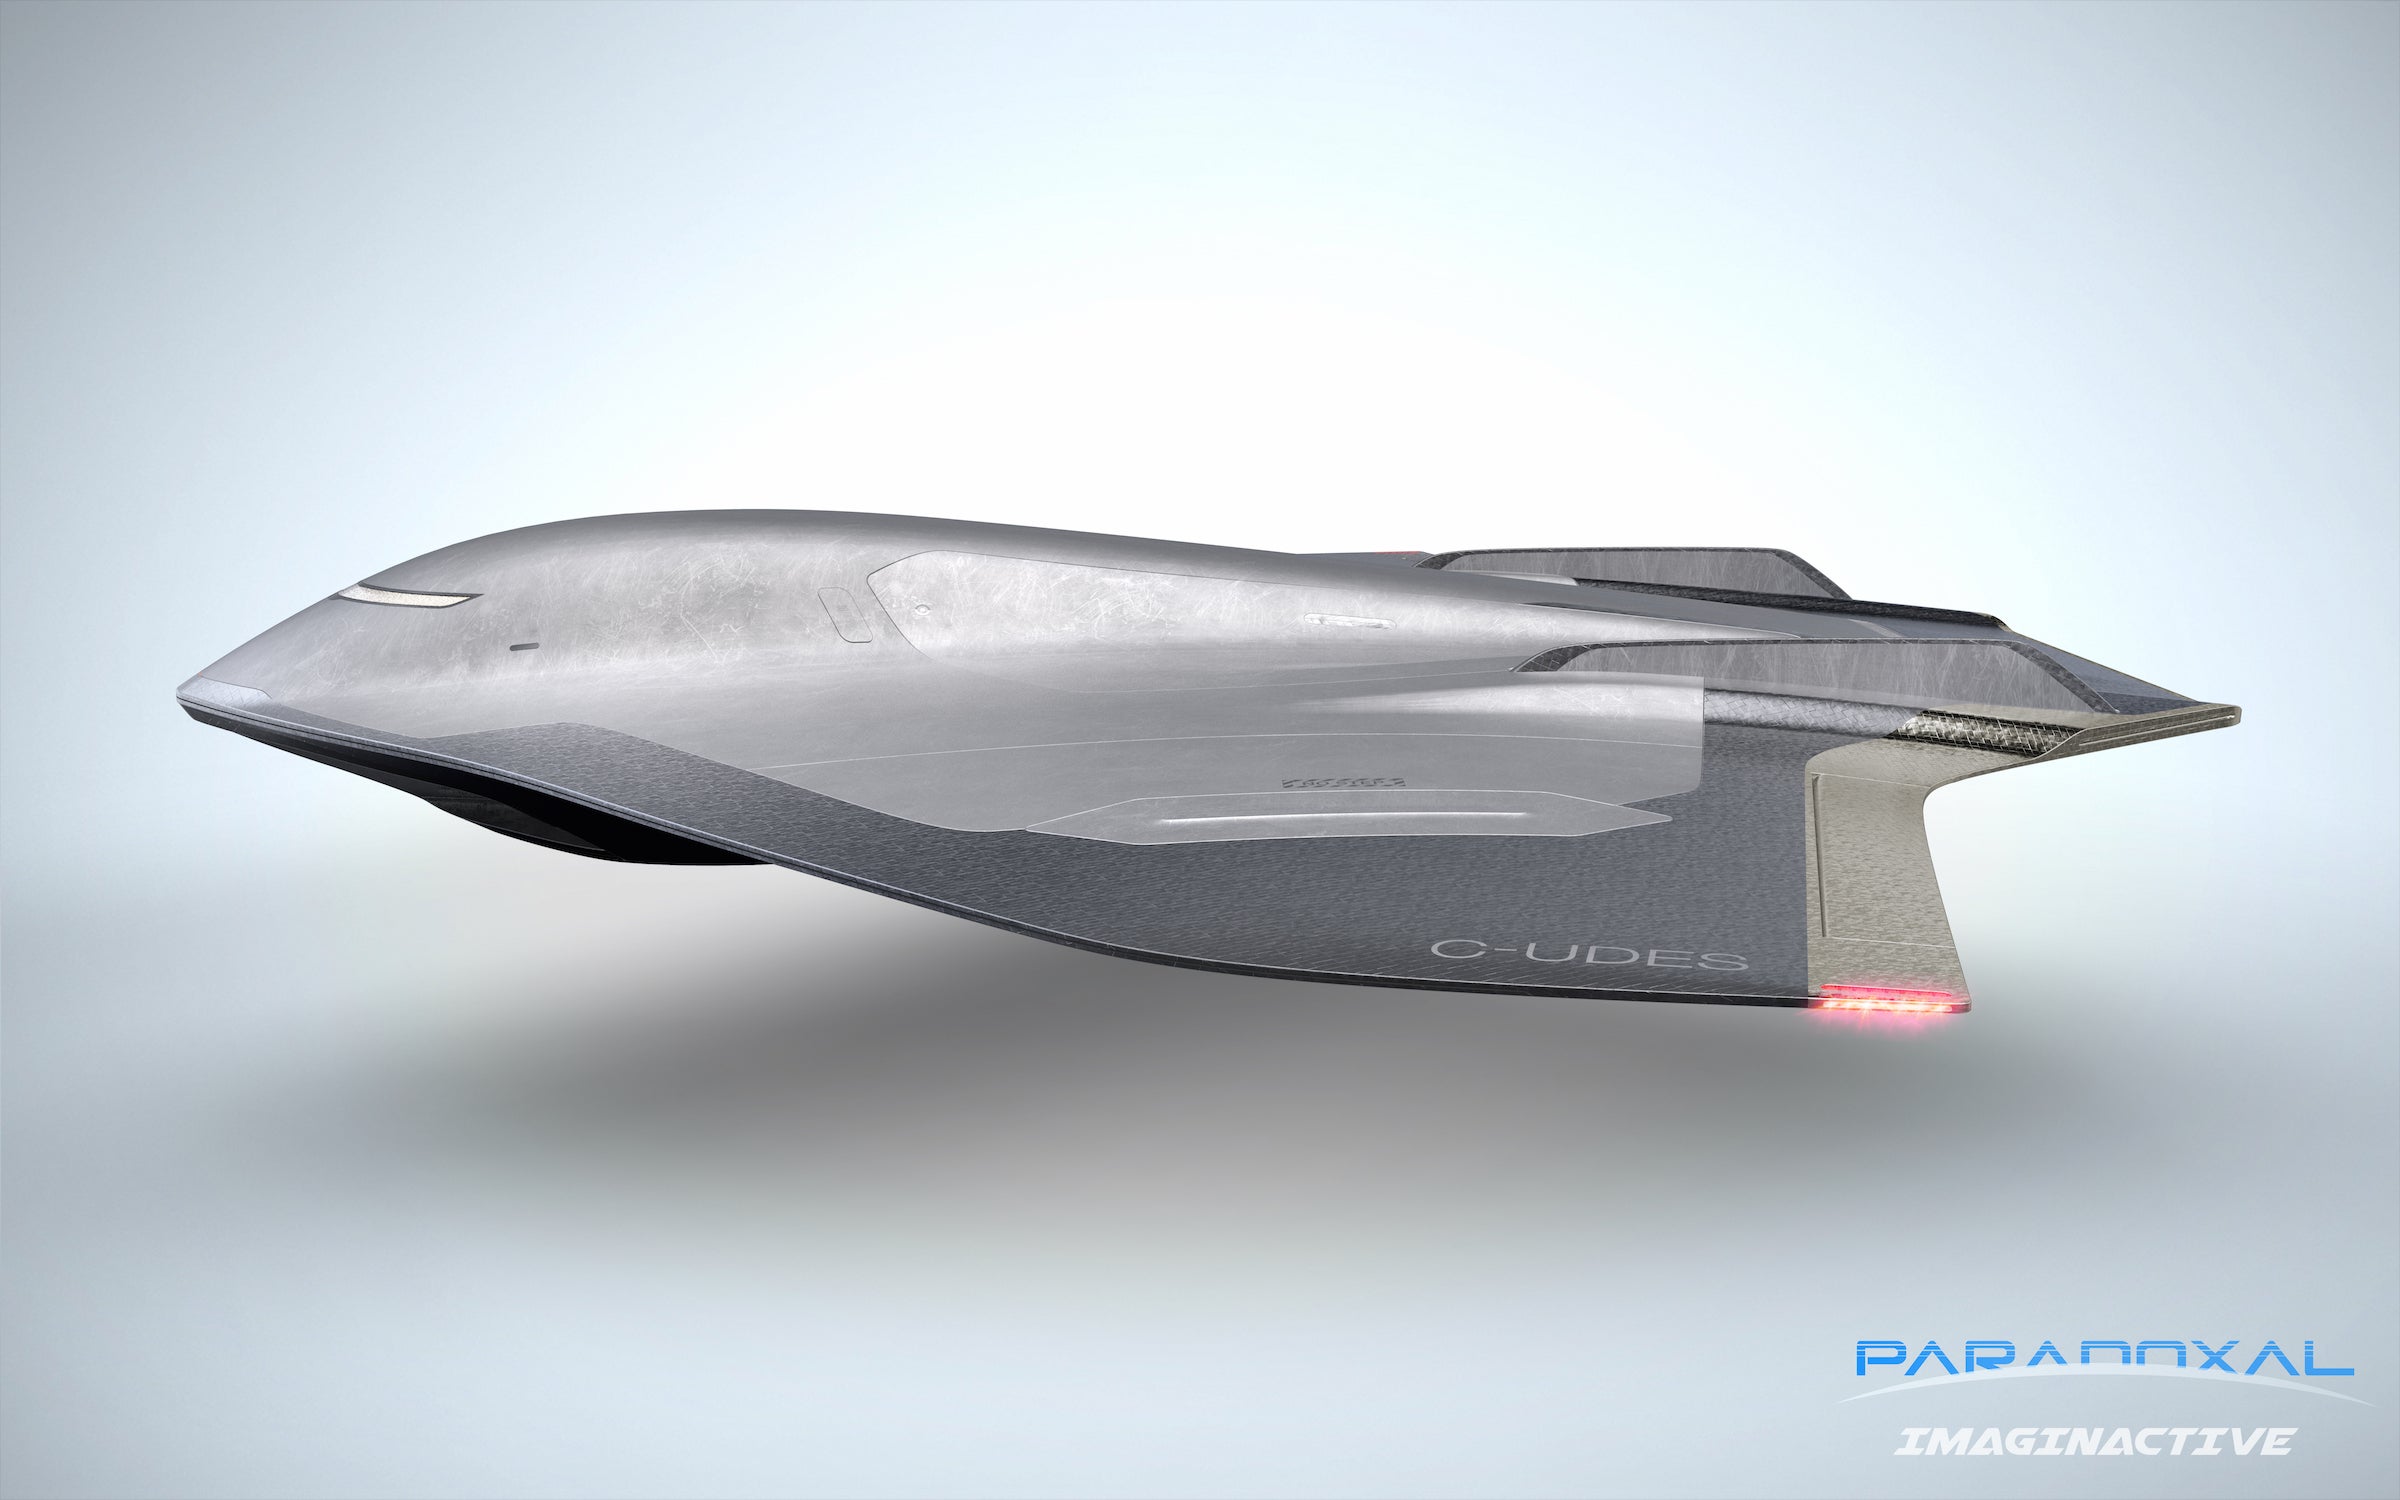 Imaginactive Paradoxal Hypersonic Jet